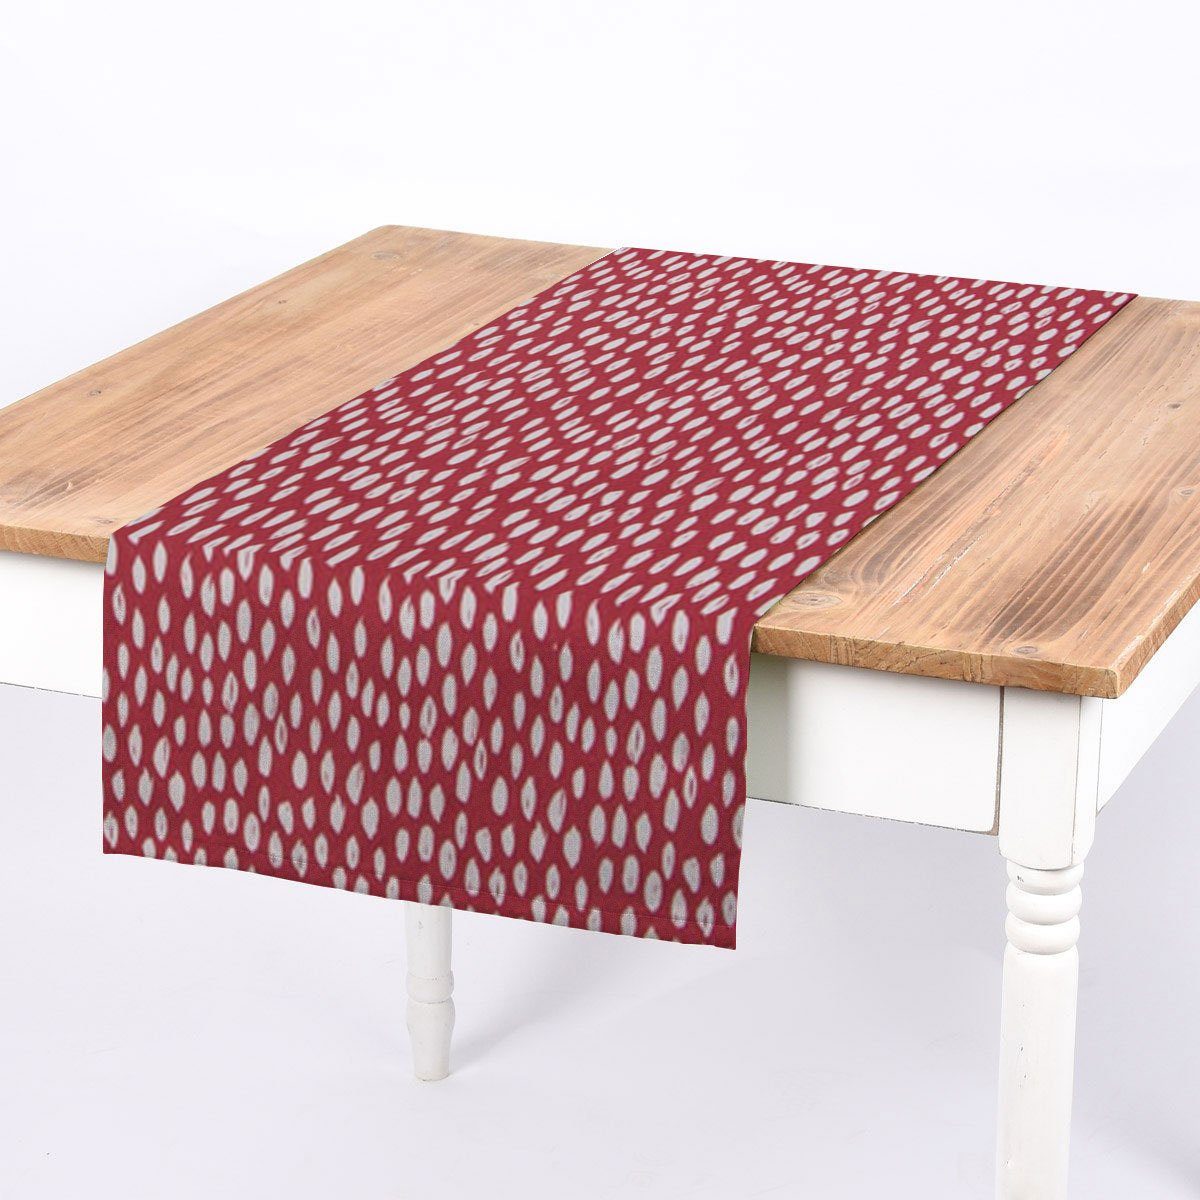 SCHÖNER LEBEN. Tischläufer SCHÖNER LEBEN. Tischläufer rot mit Klecksen Tropfen 40x160cm, handmade